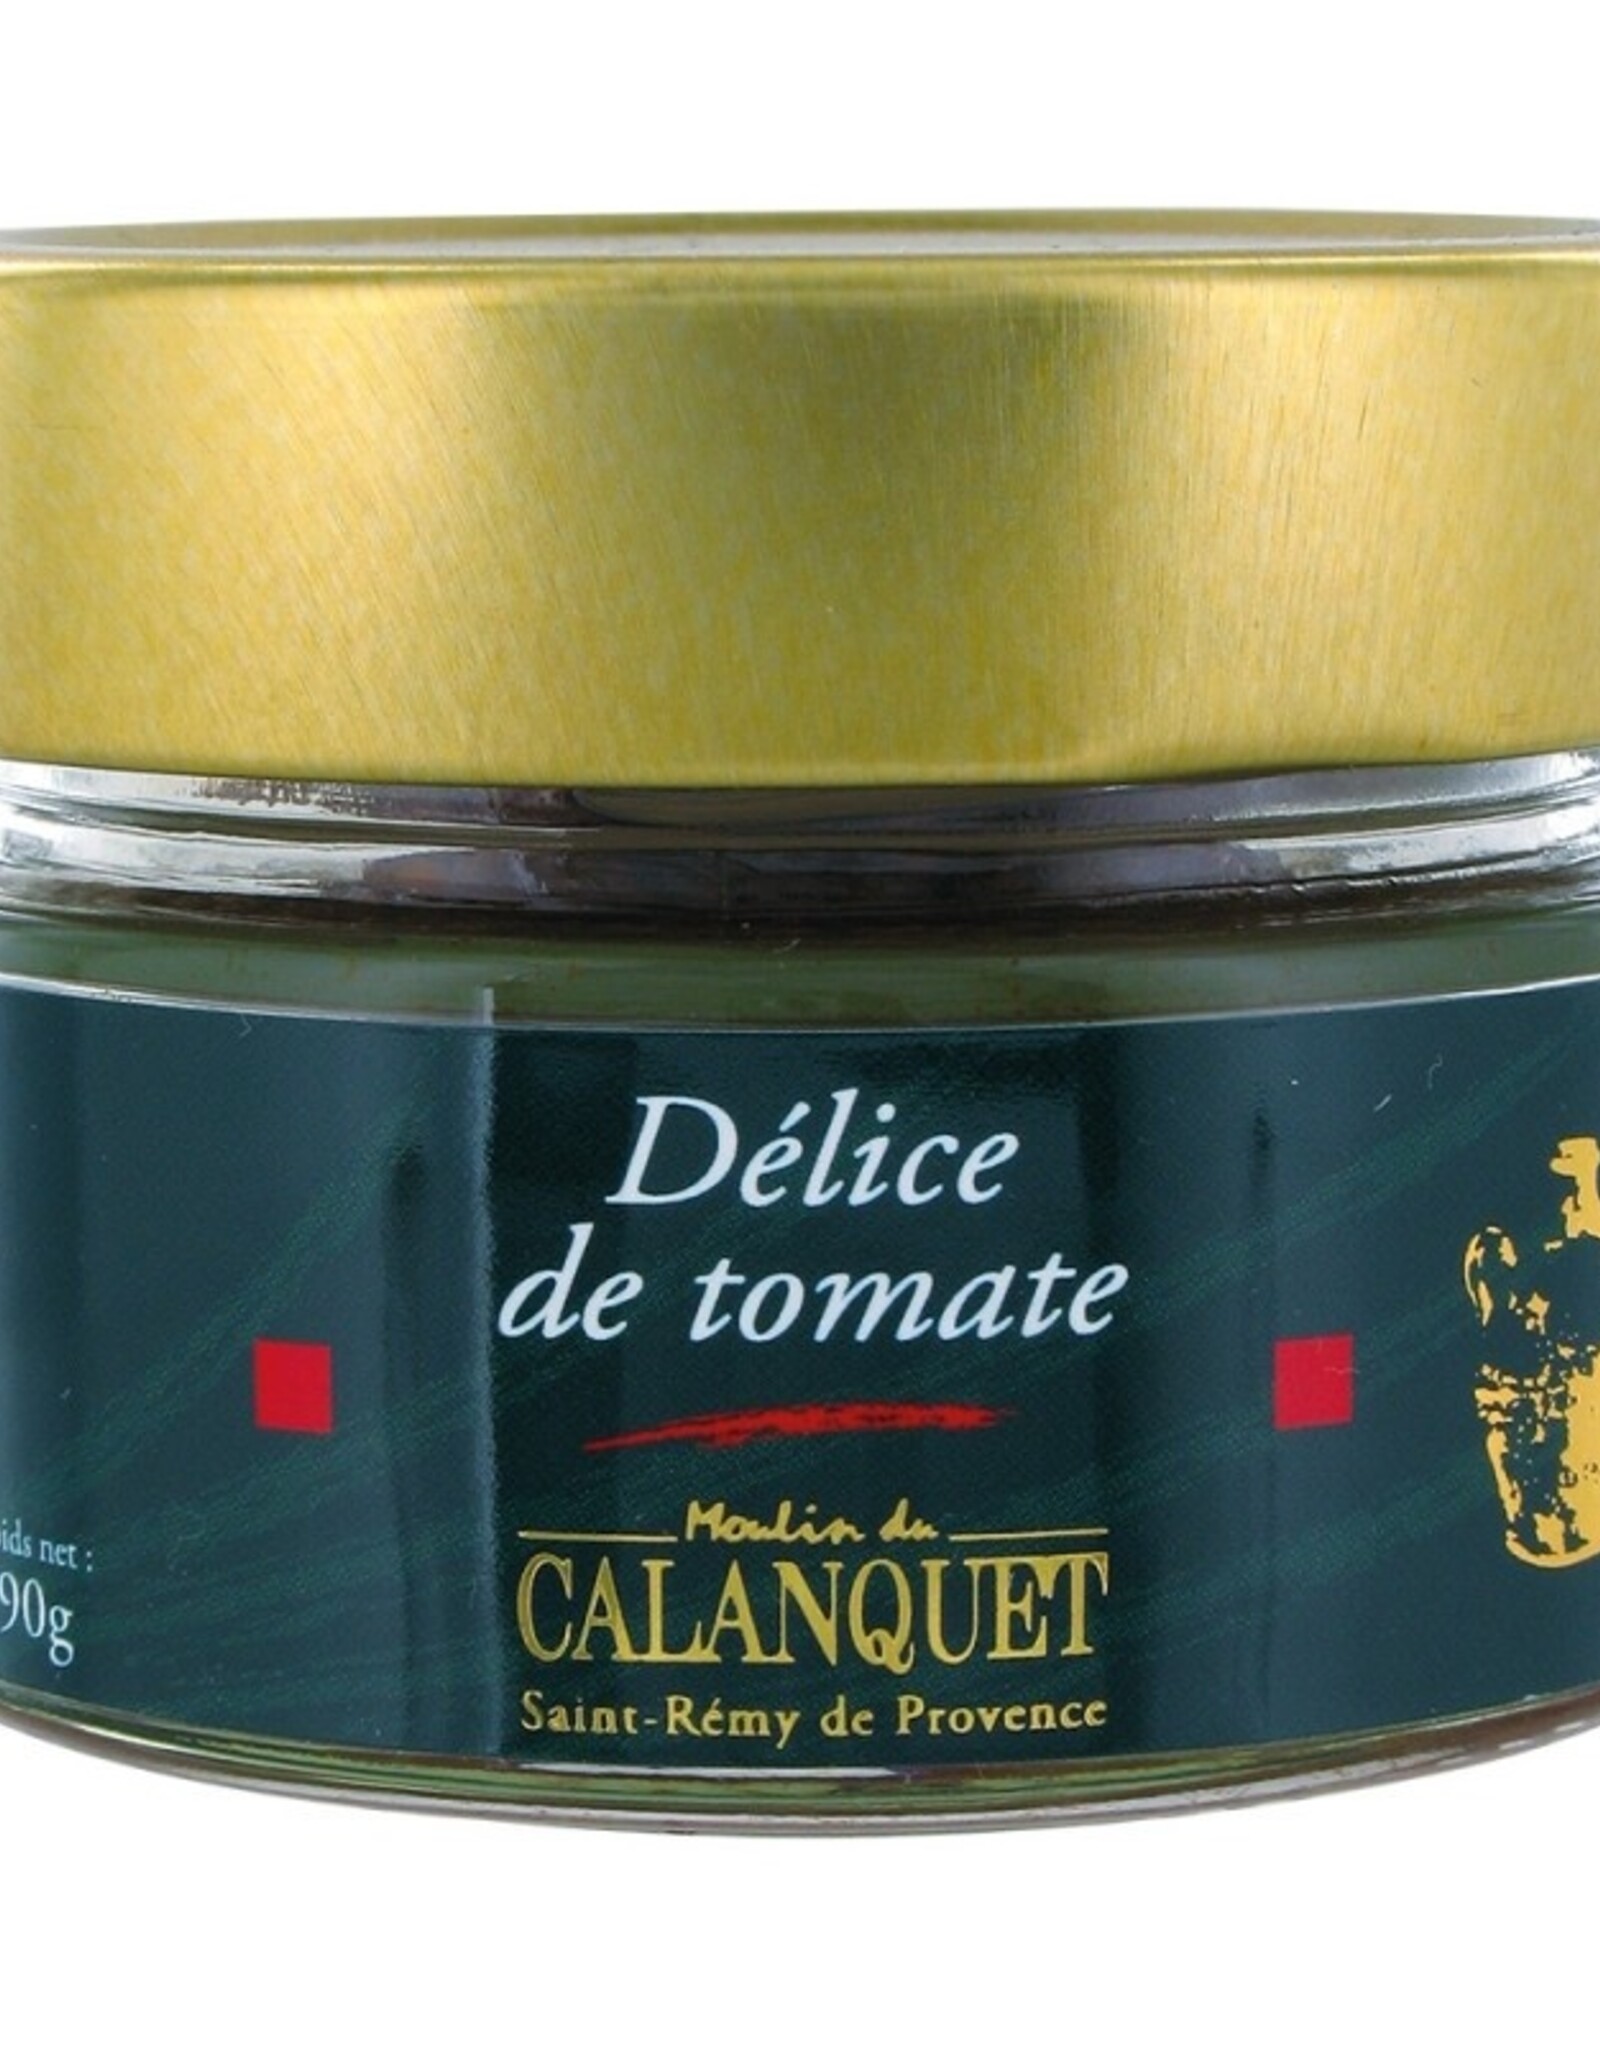 Moulin du Calanquet Délice de tomate / Tomato Caviar 90 g